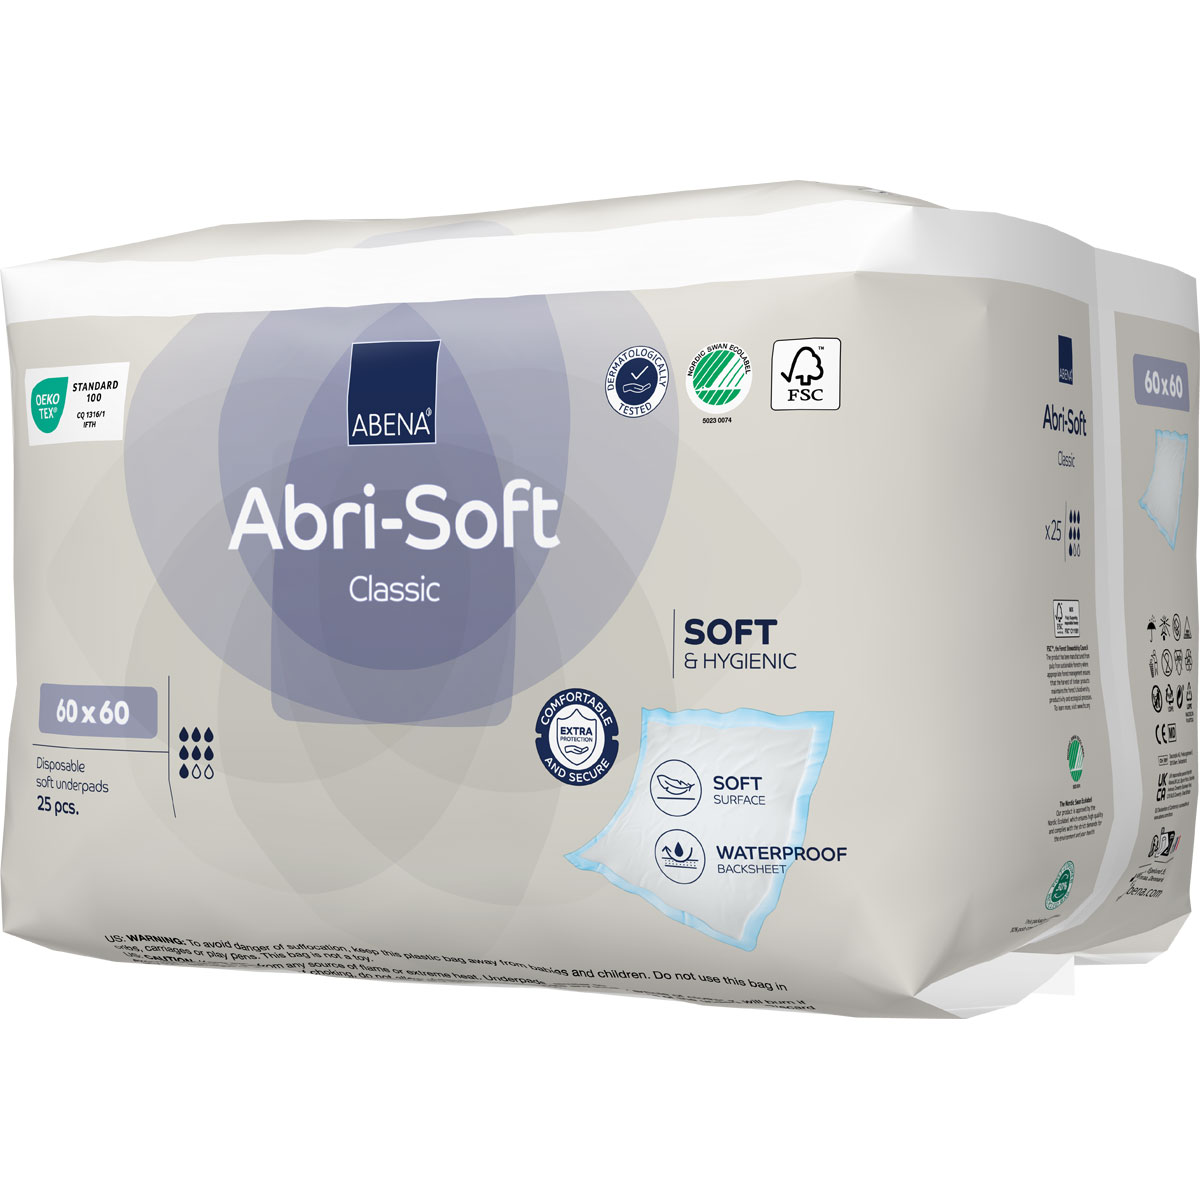 ABENA Abri-Soft CLASSIC Betteinlagen 60 x 60cm (25 Stück Packung)